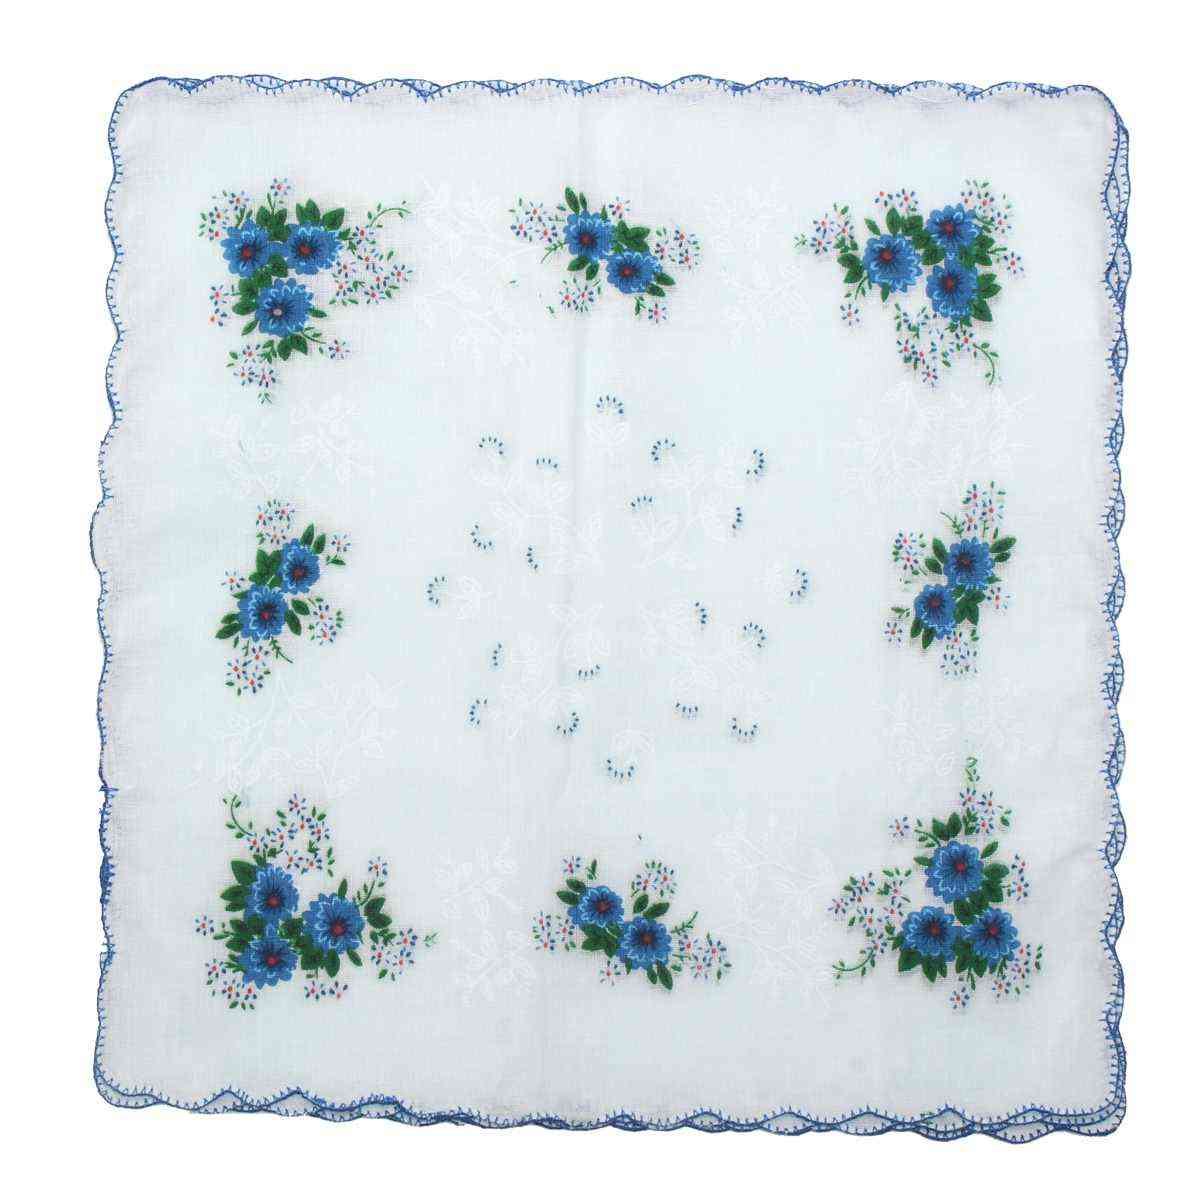 Fazzoletti da donna con stampa floreale vintage - fazzoletti quadrati di asciugamani per donna